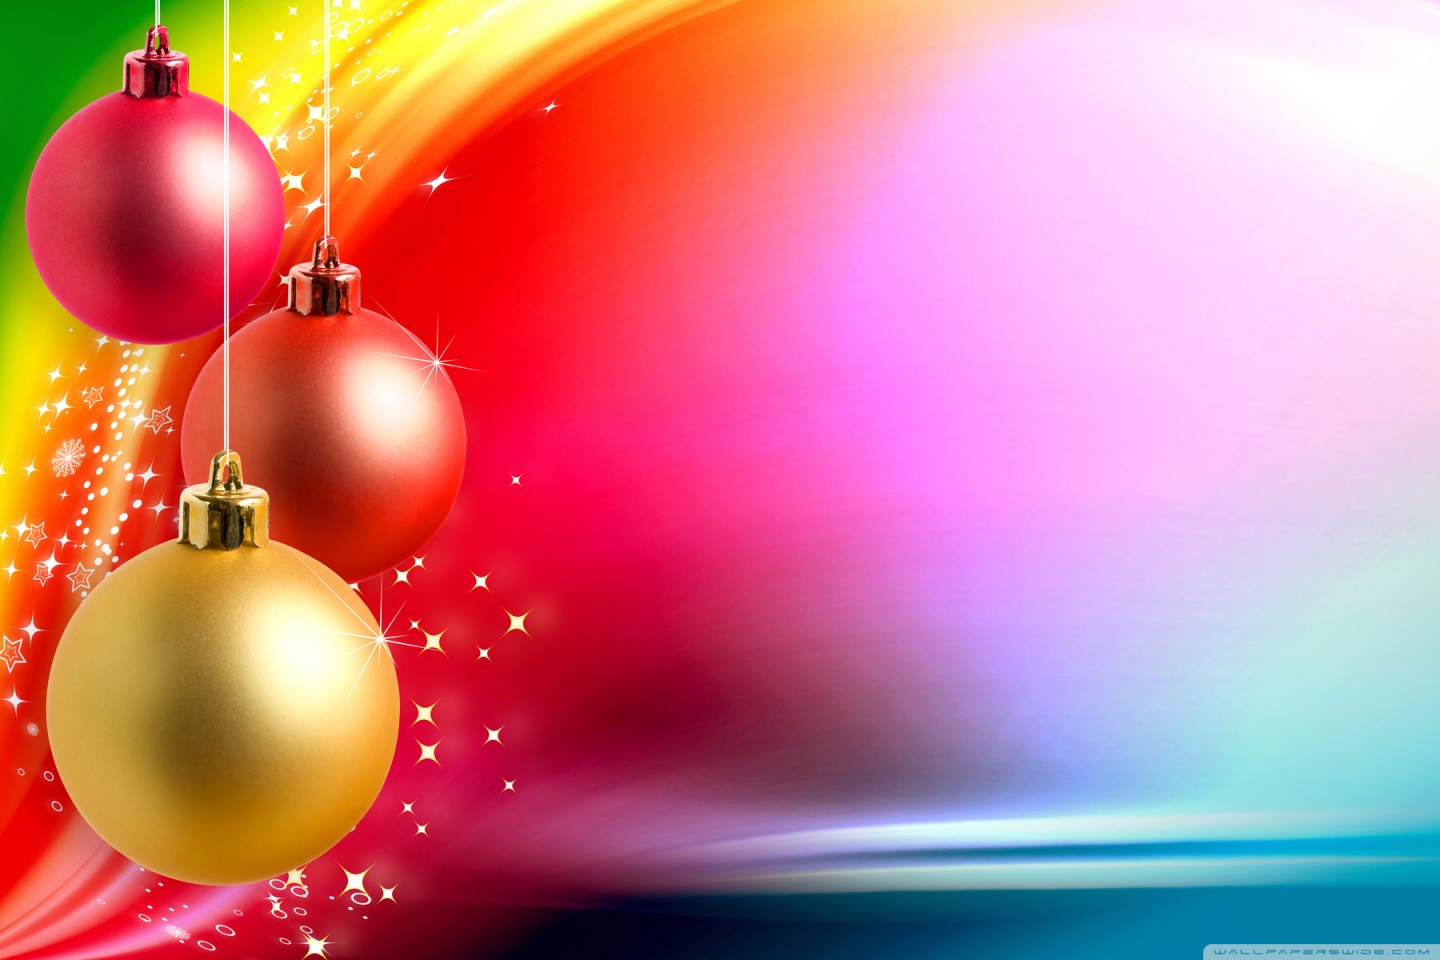 Hình ảnh phông nền Giáng Sinh đầy màu sắc, tươi vui và nhiều niềm vui. Hãy trang trí cho mình một không gian Giáng Sinh ấm áp và tuyệt vời với phông nền đủ màu sắc.